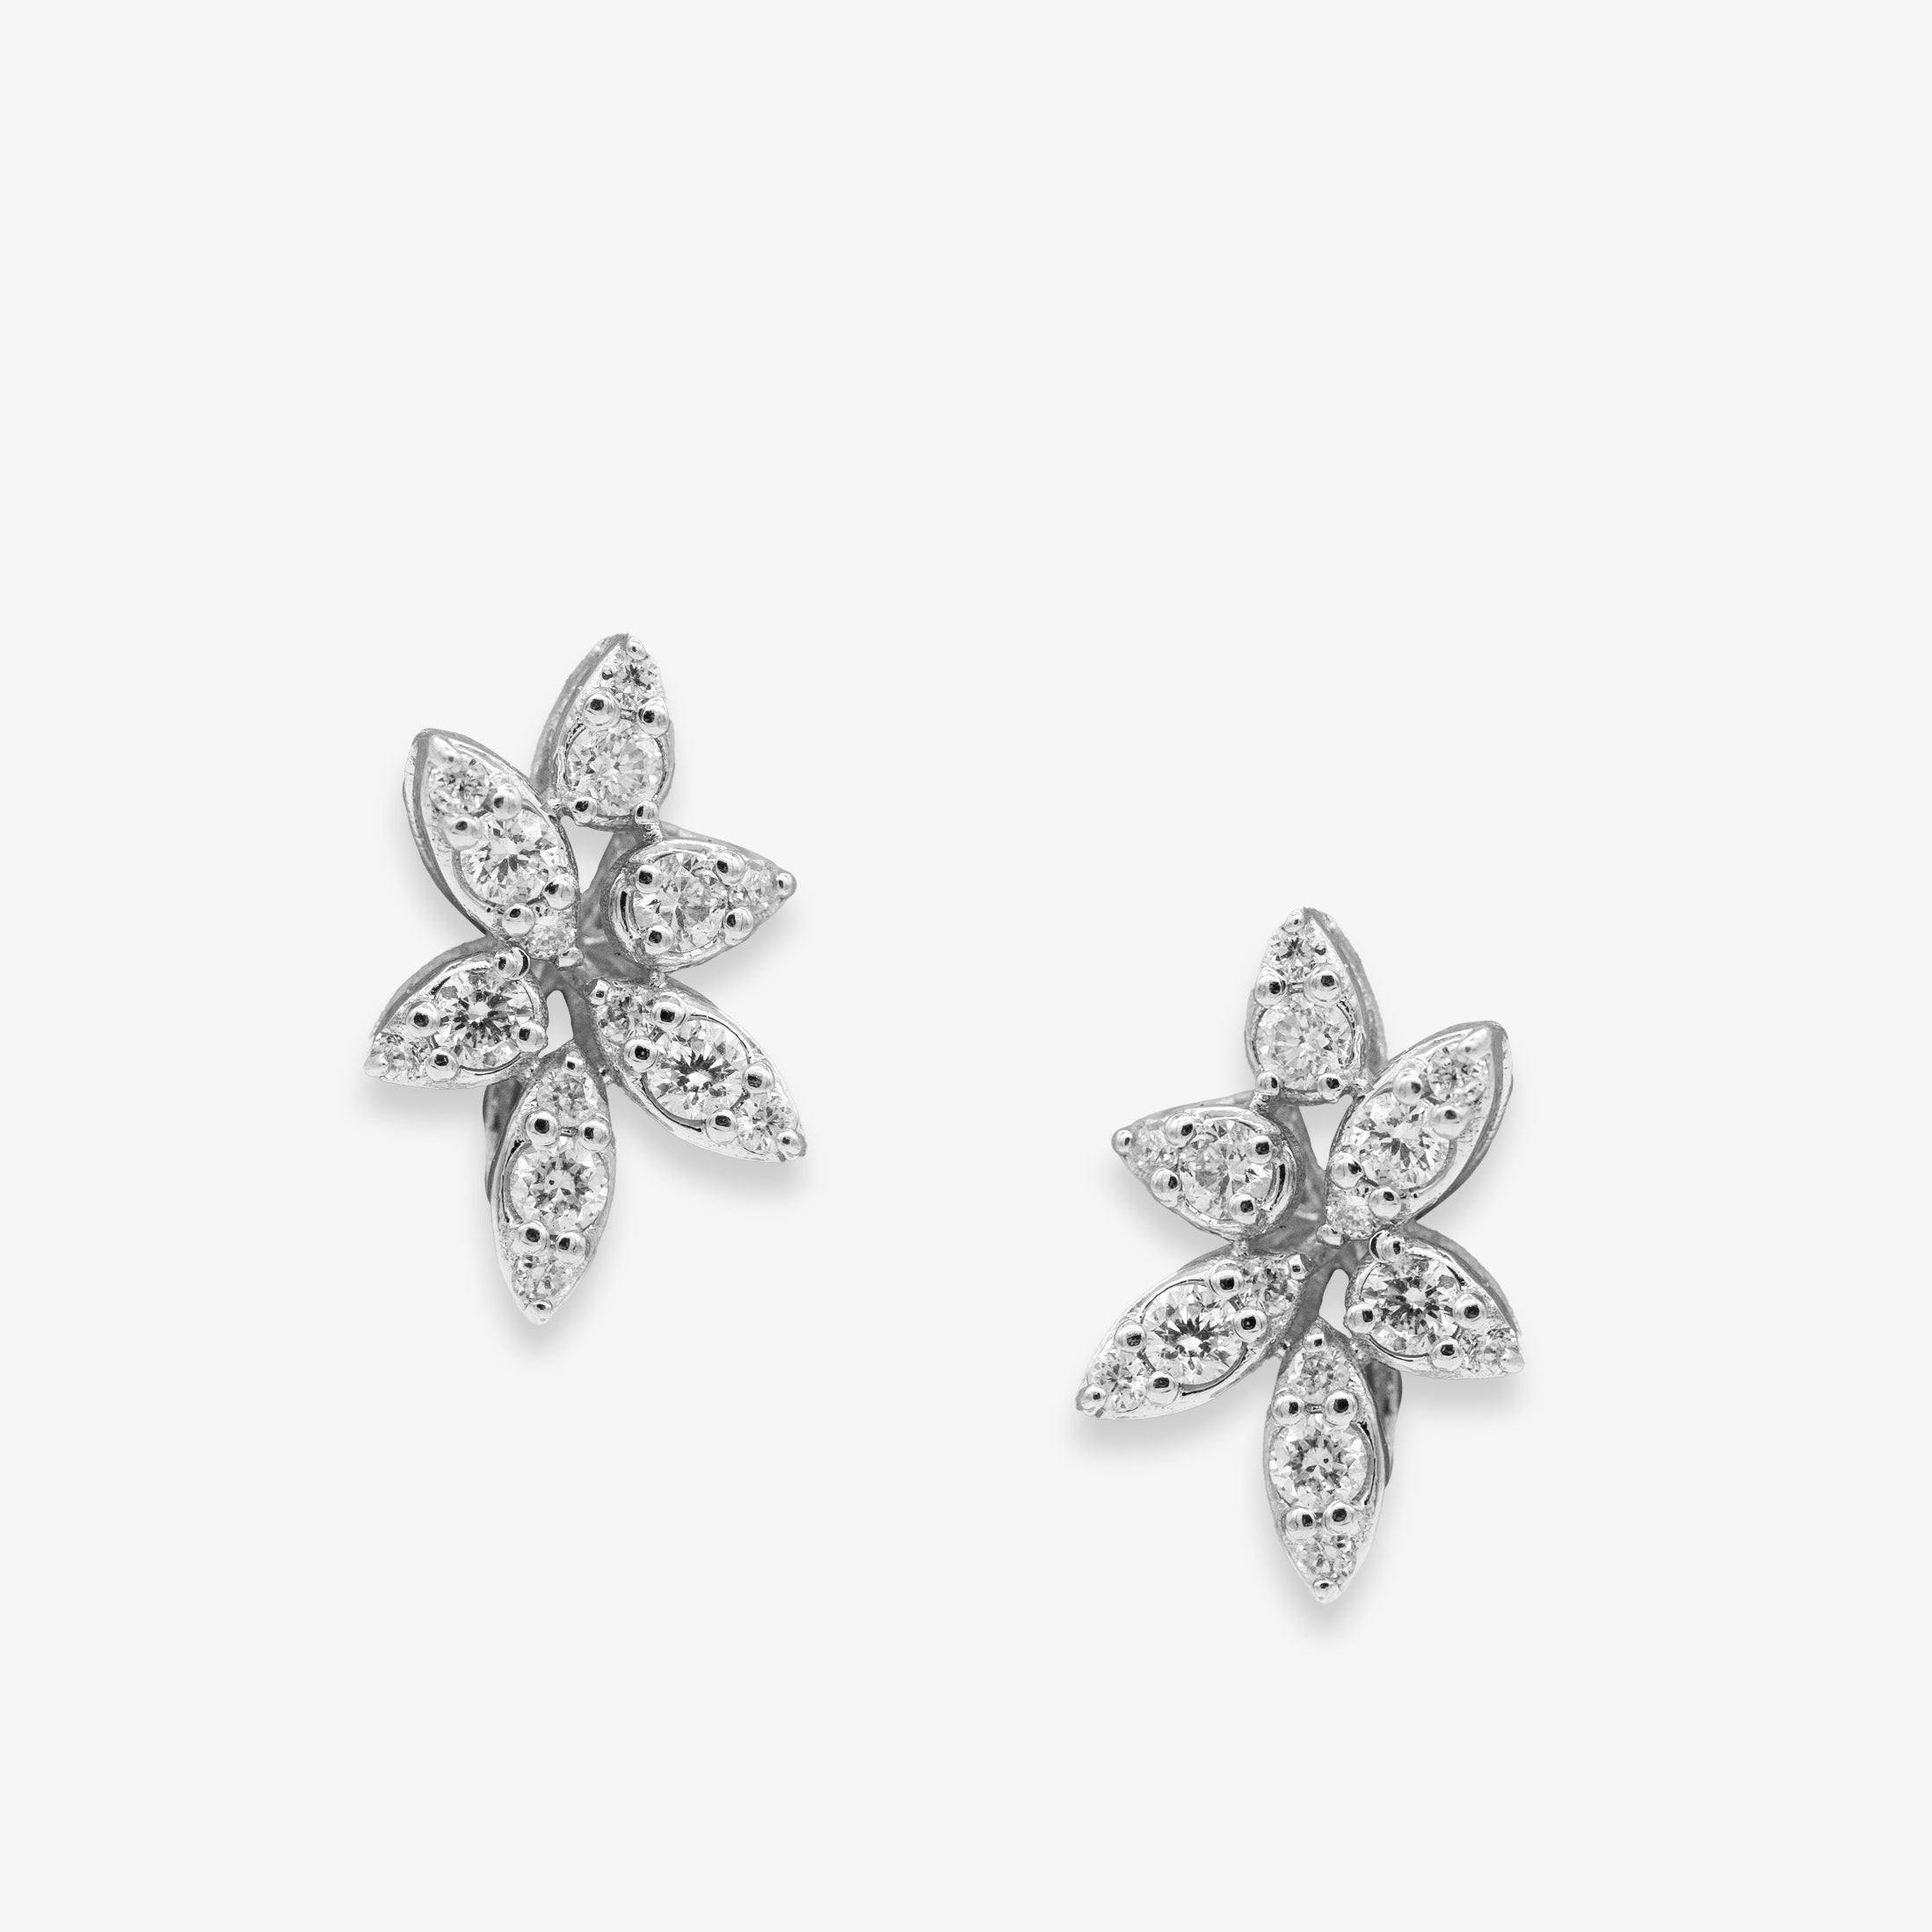 Flower earrings with diamonds